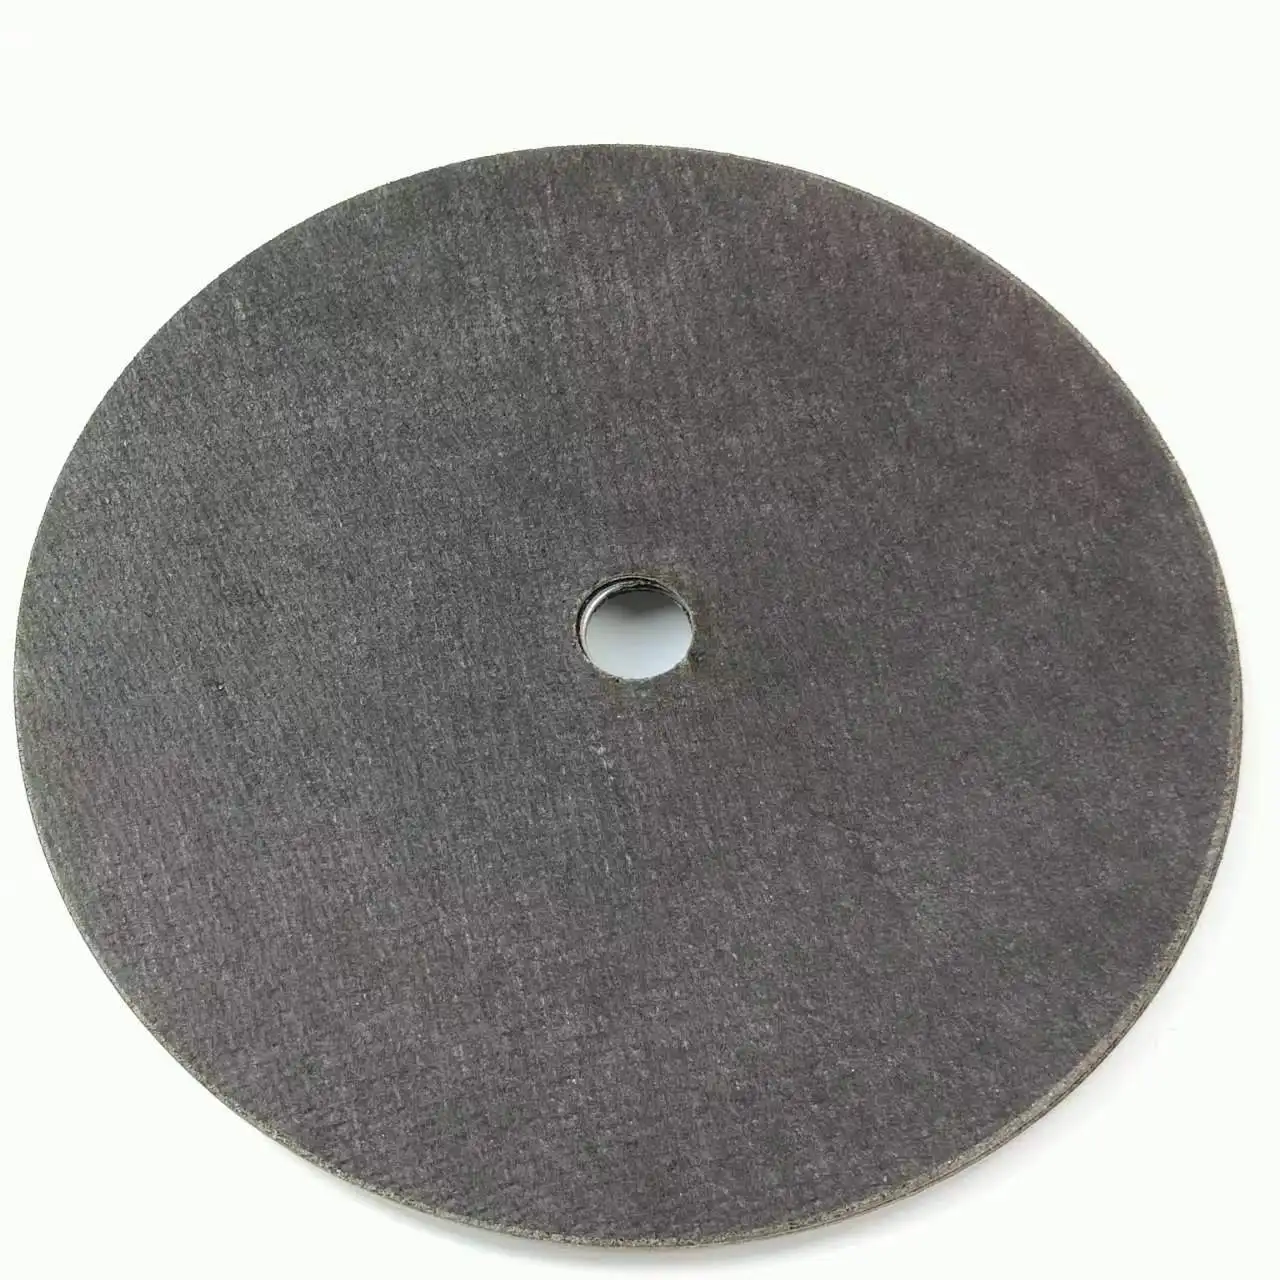 Абразивный диск, 9 дюймов/230 мм, нержавеющая сталь